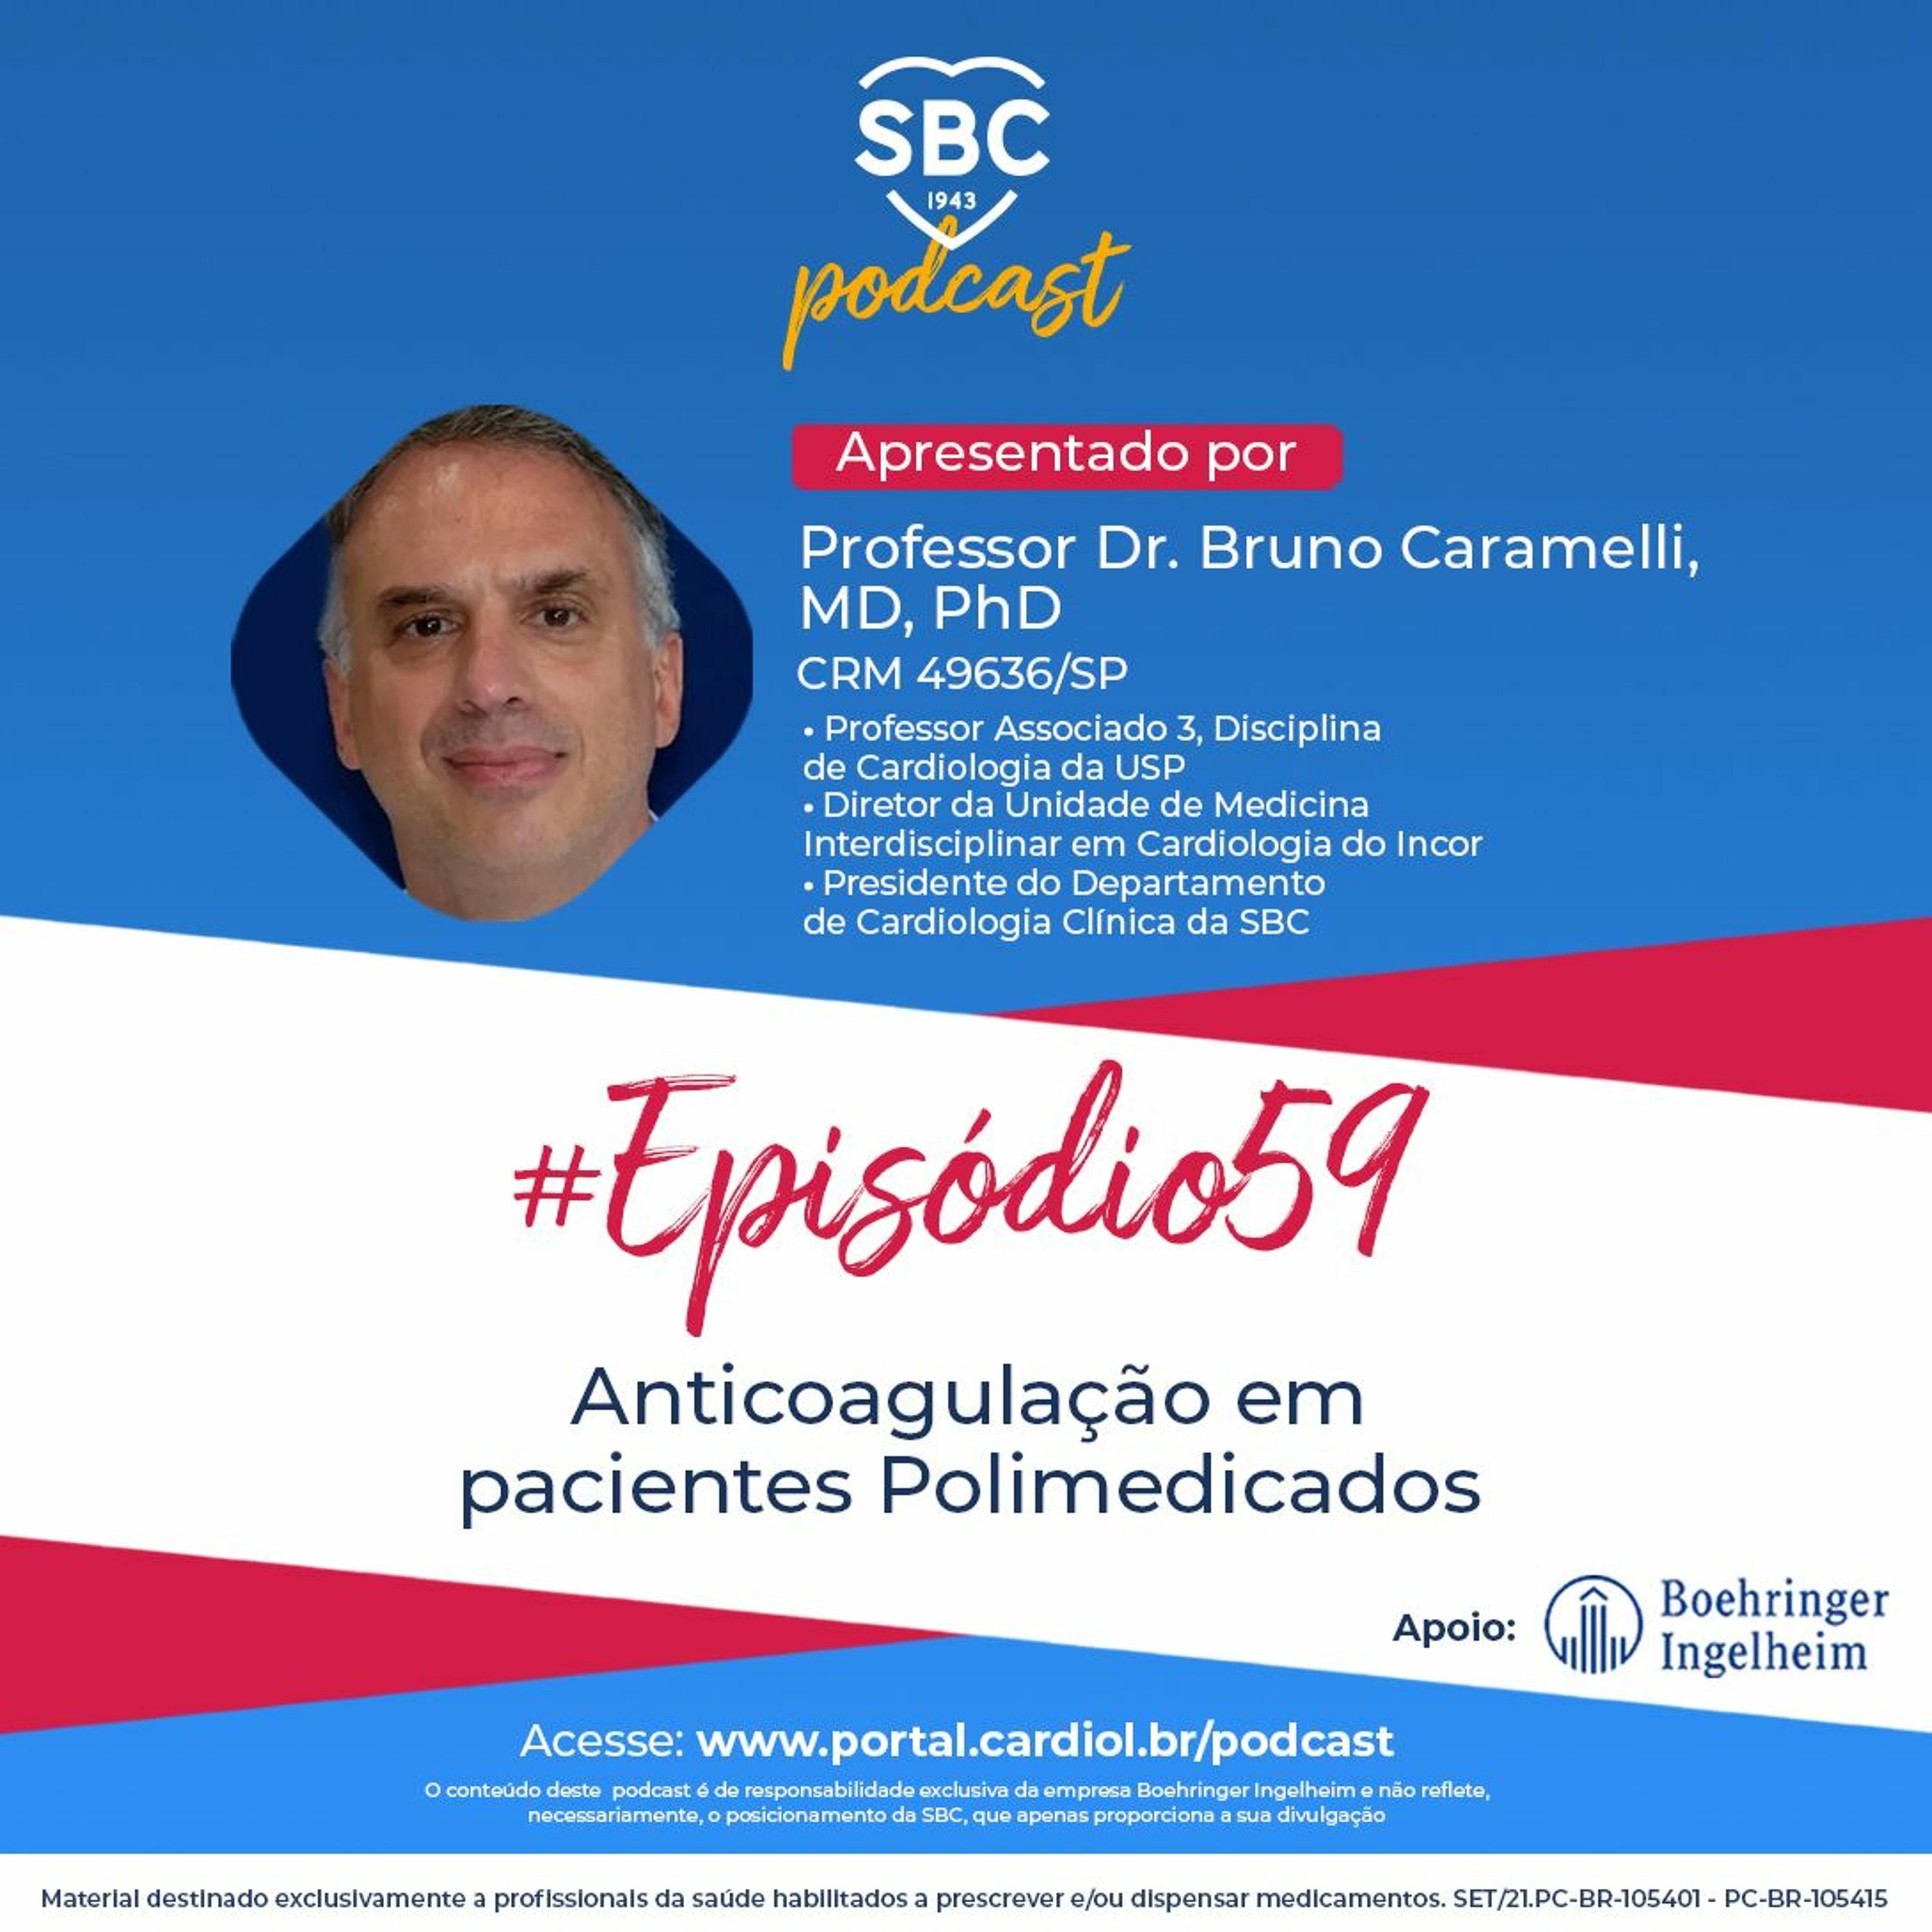 Podcast SBC 059 - Anticoagulação em pacientes Polimedicados by SBC - Sociedade Brasileira de Cardiologia